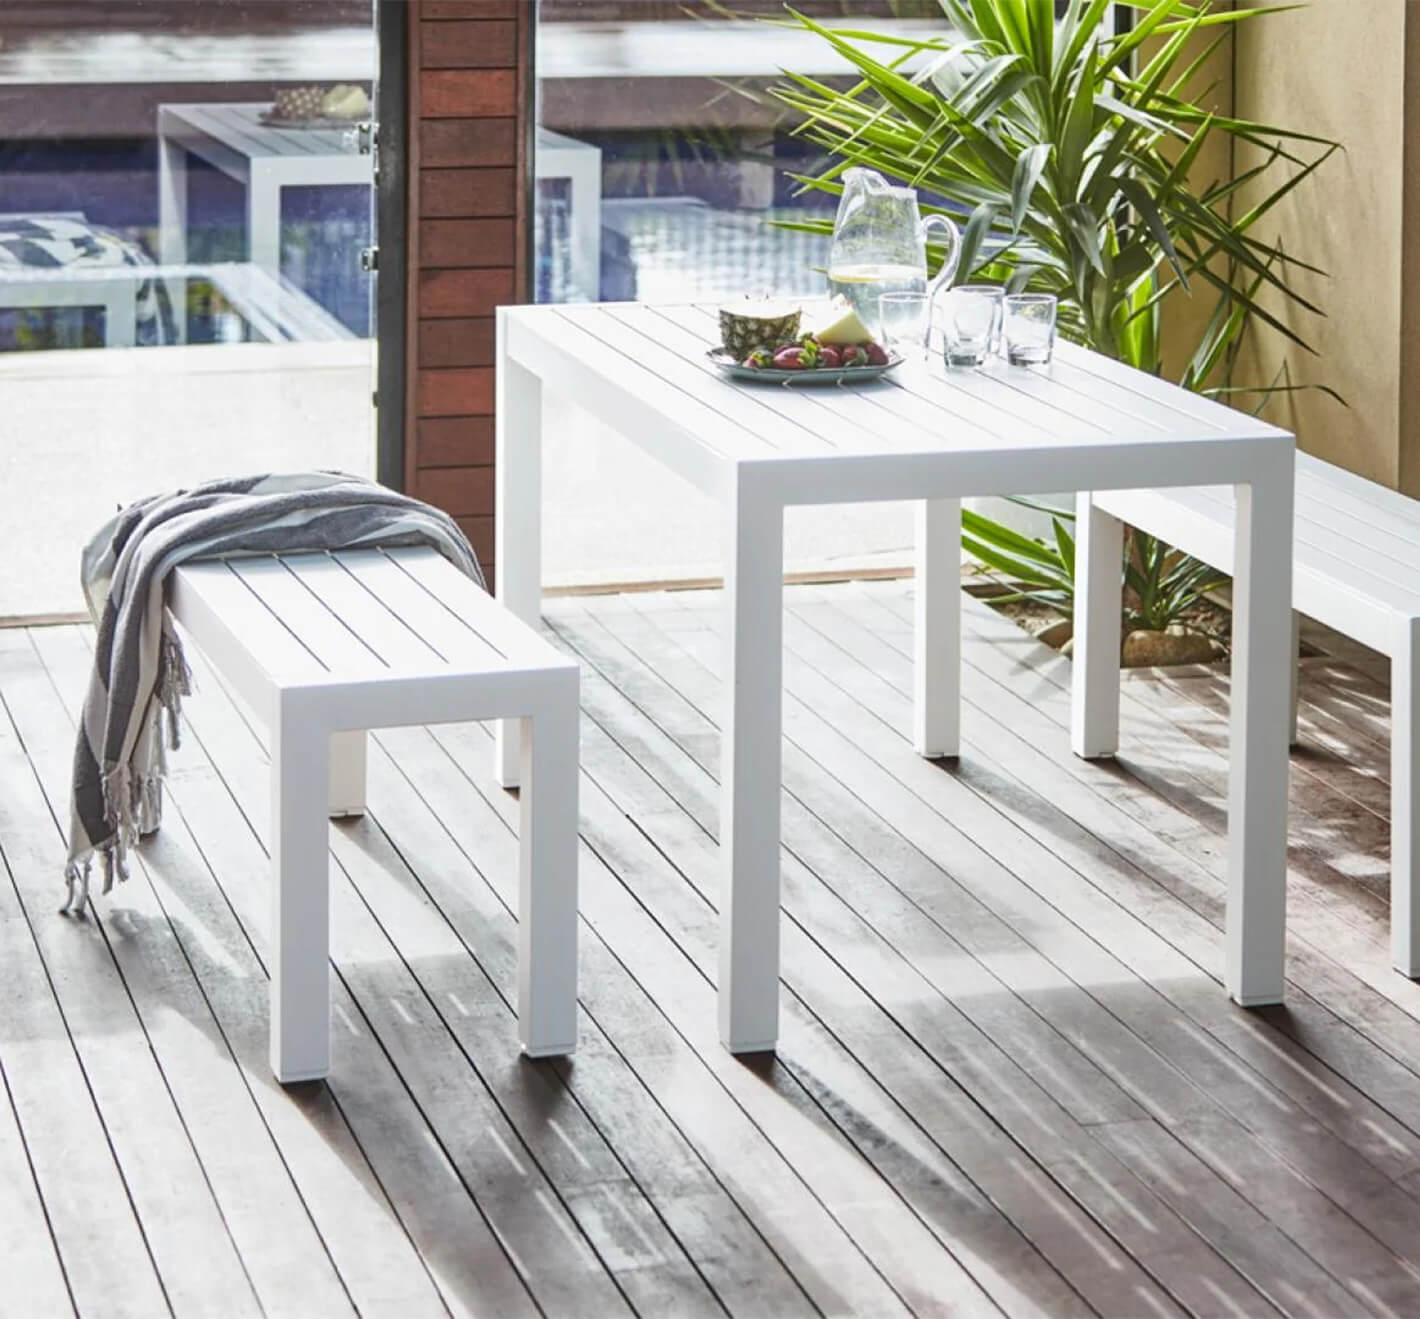 aluminium outdoor furniture